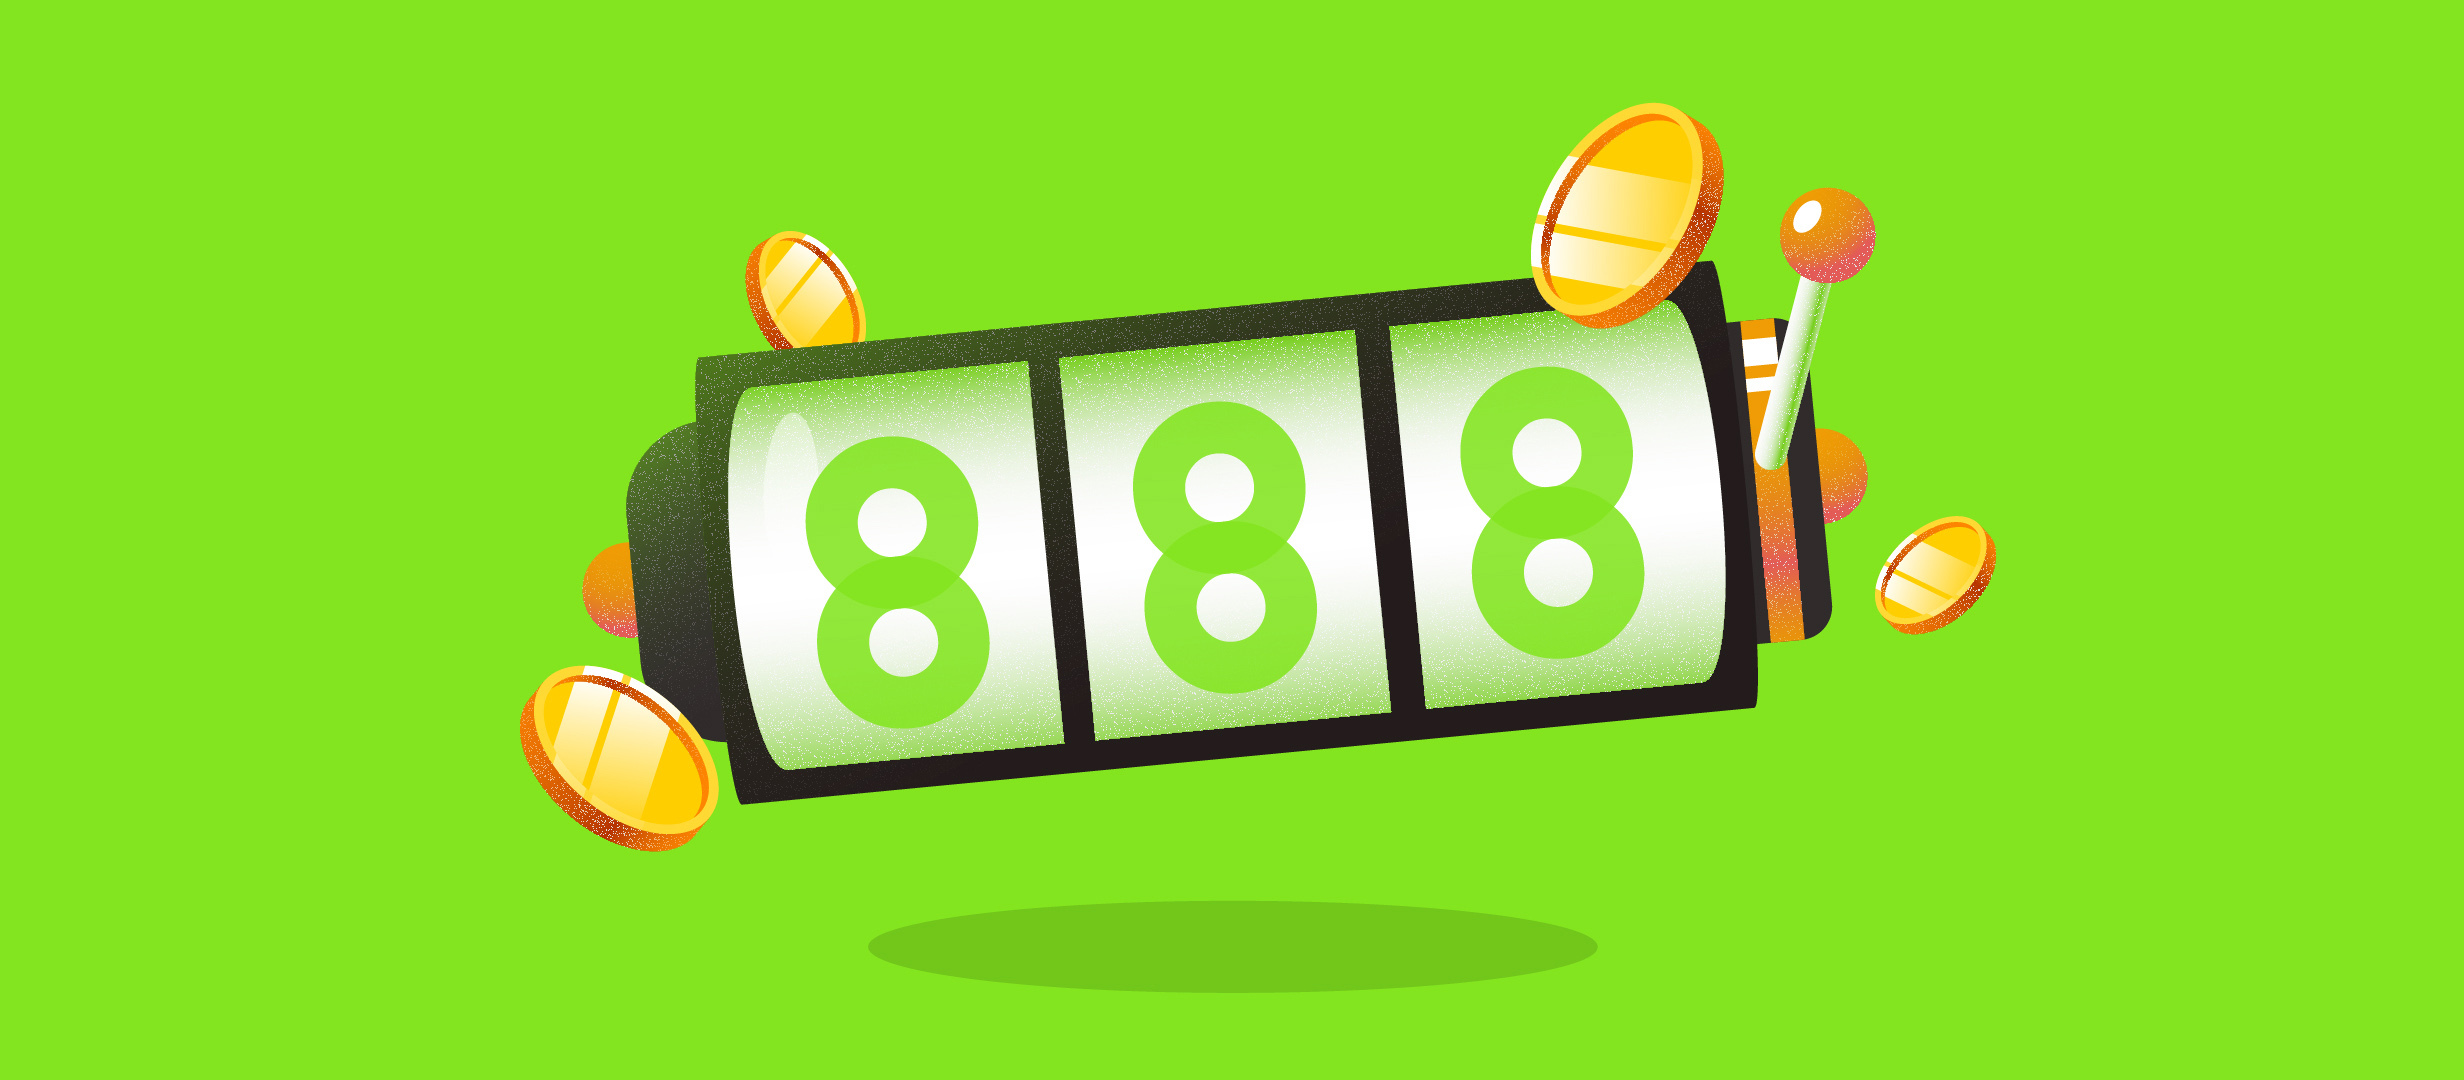 Joaca-te cele mai fascinante sloturi la 888 Casino